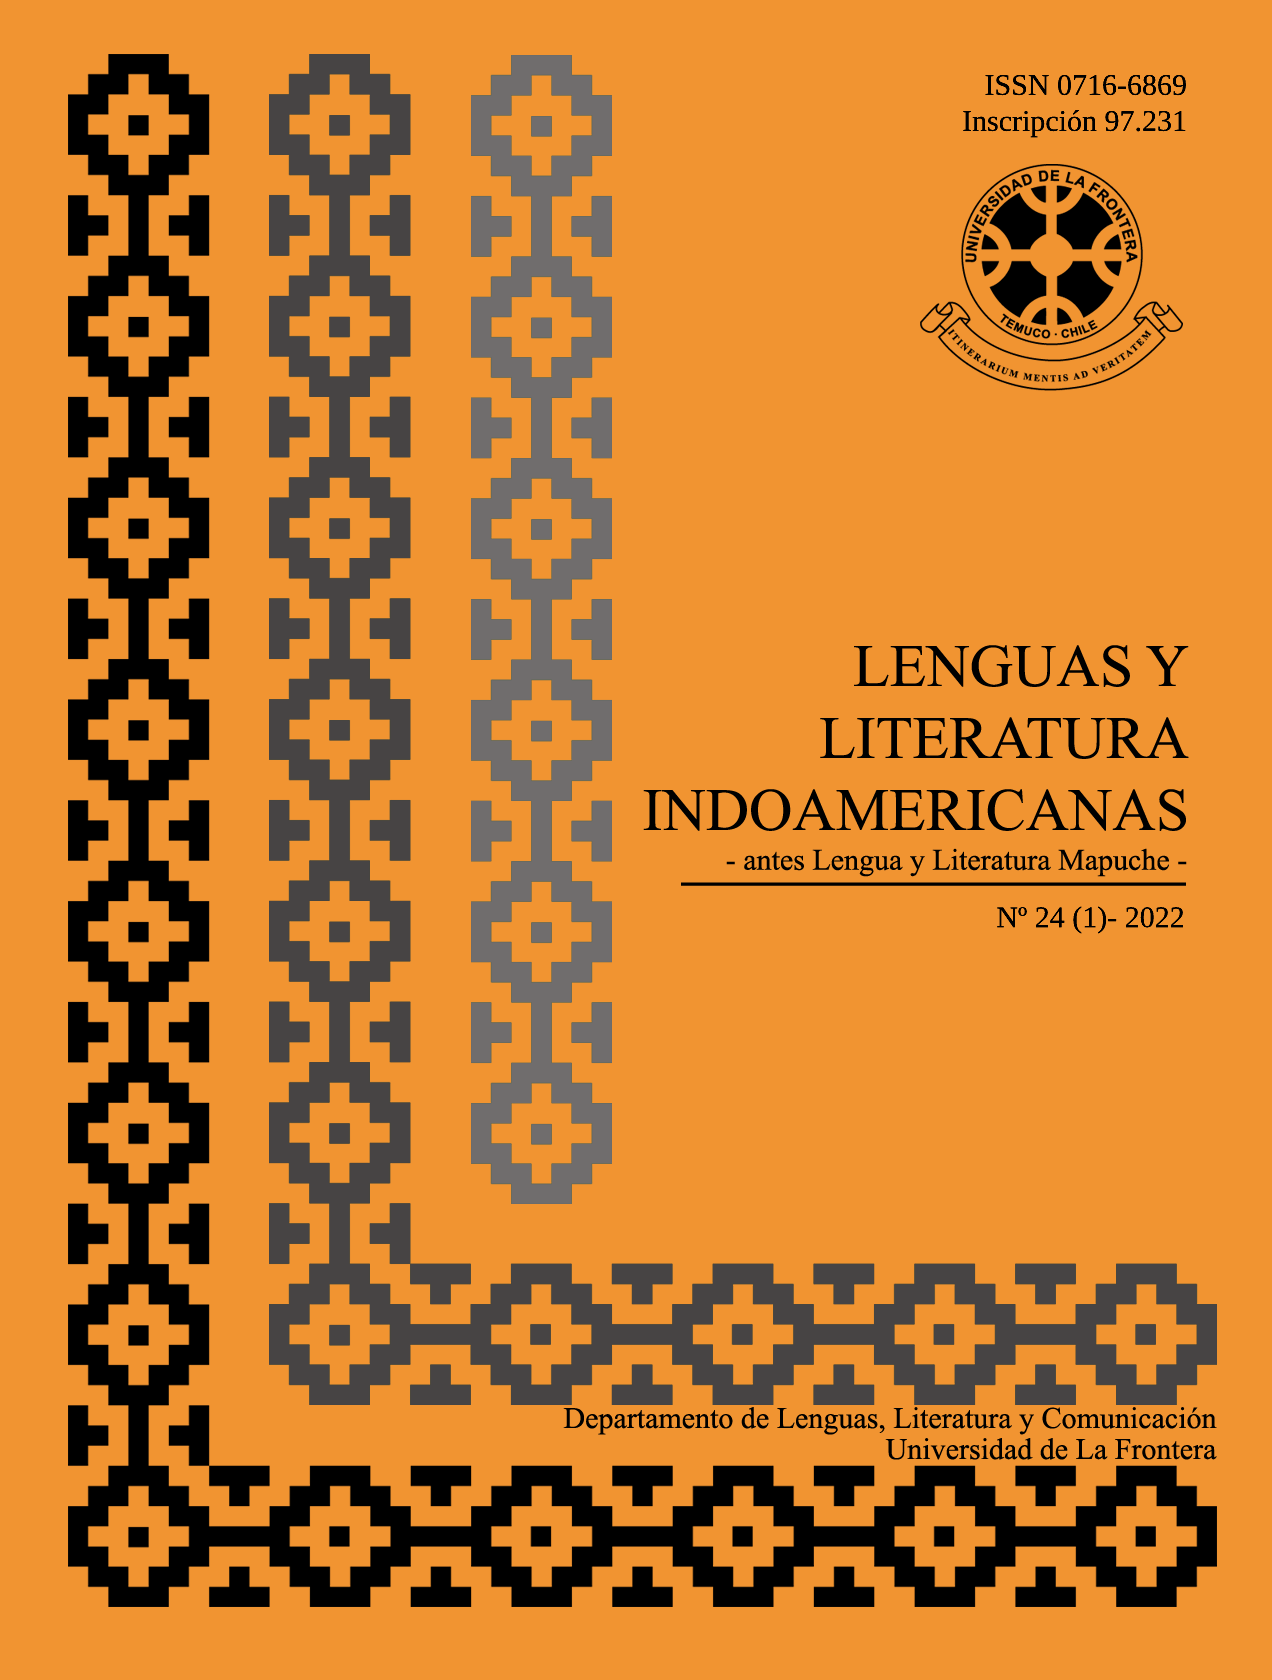 					Ver Vol. 24 Núm. 1 (2022): Revista de Lenguas y Literatura Indoamericanas (RLLI)
				